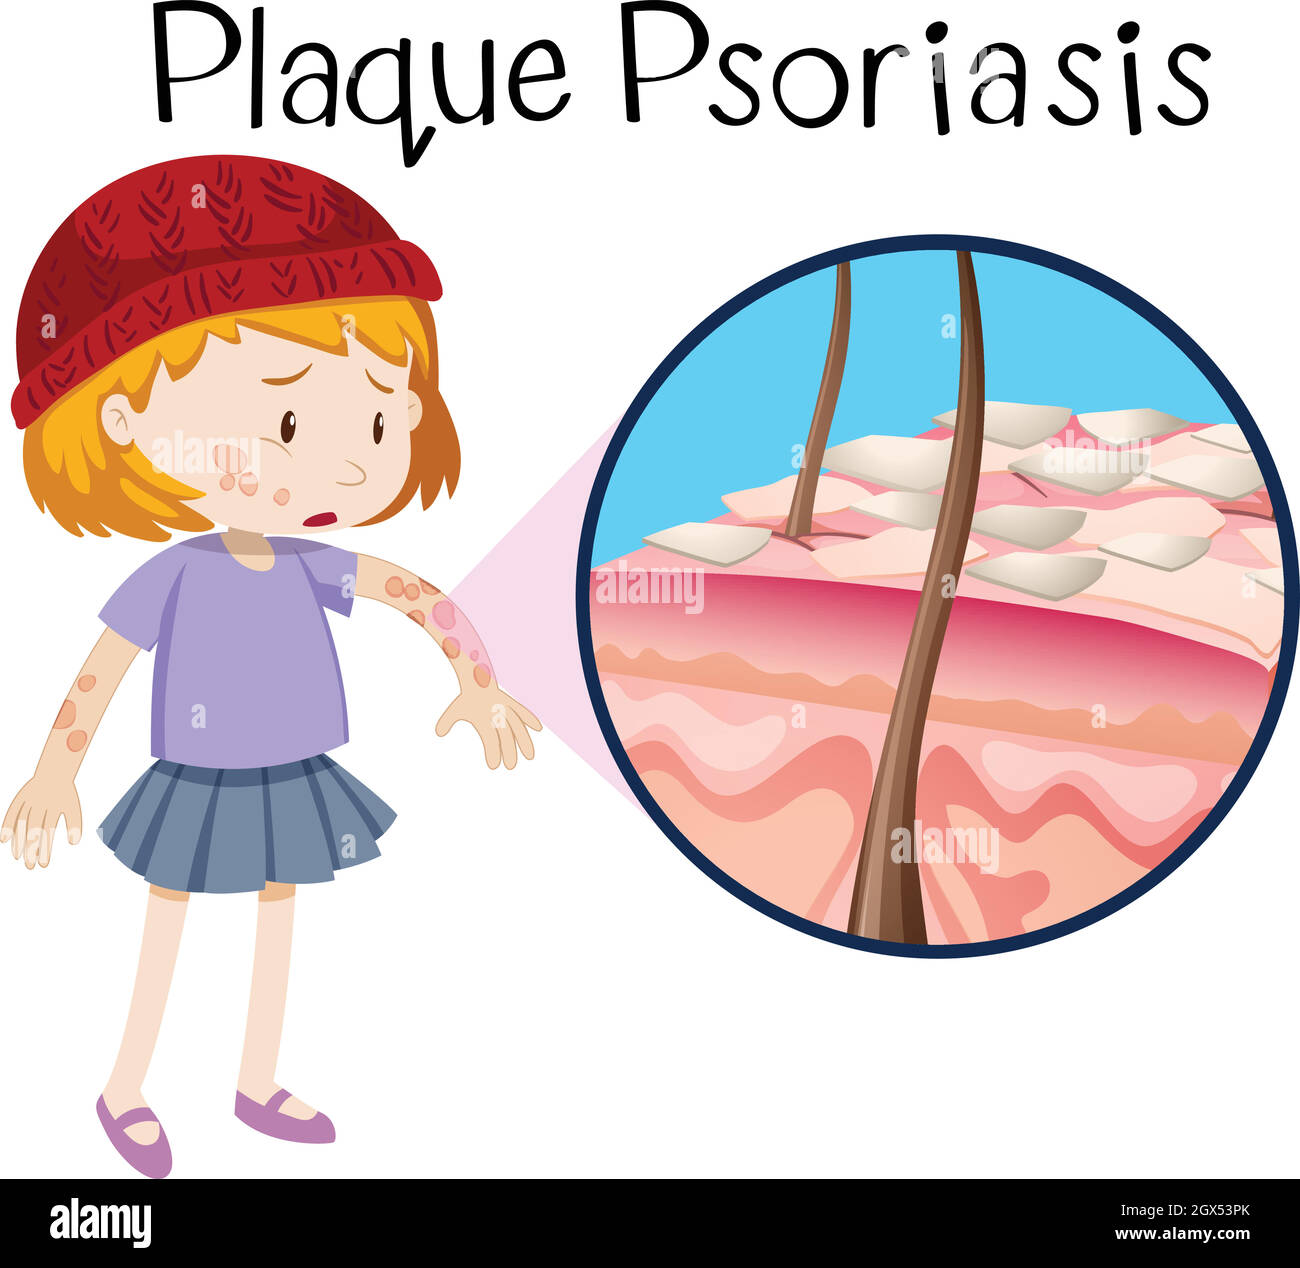 Anatomie humaine du psoriasis en plaques Illustration de Vecteur